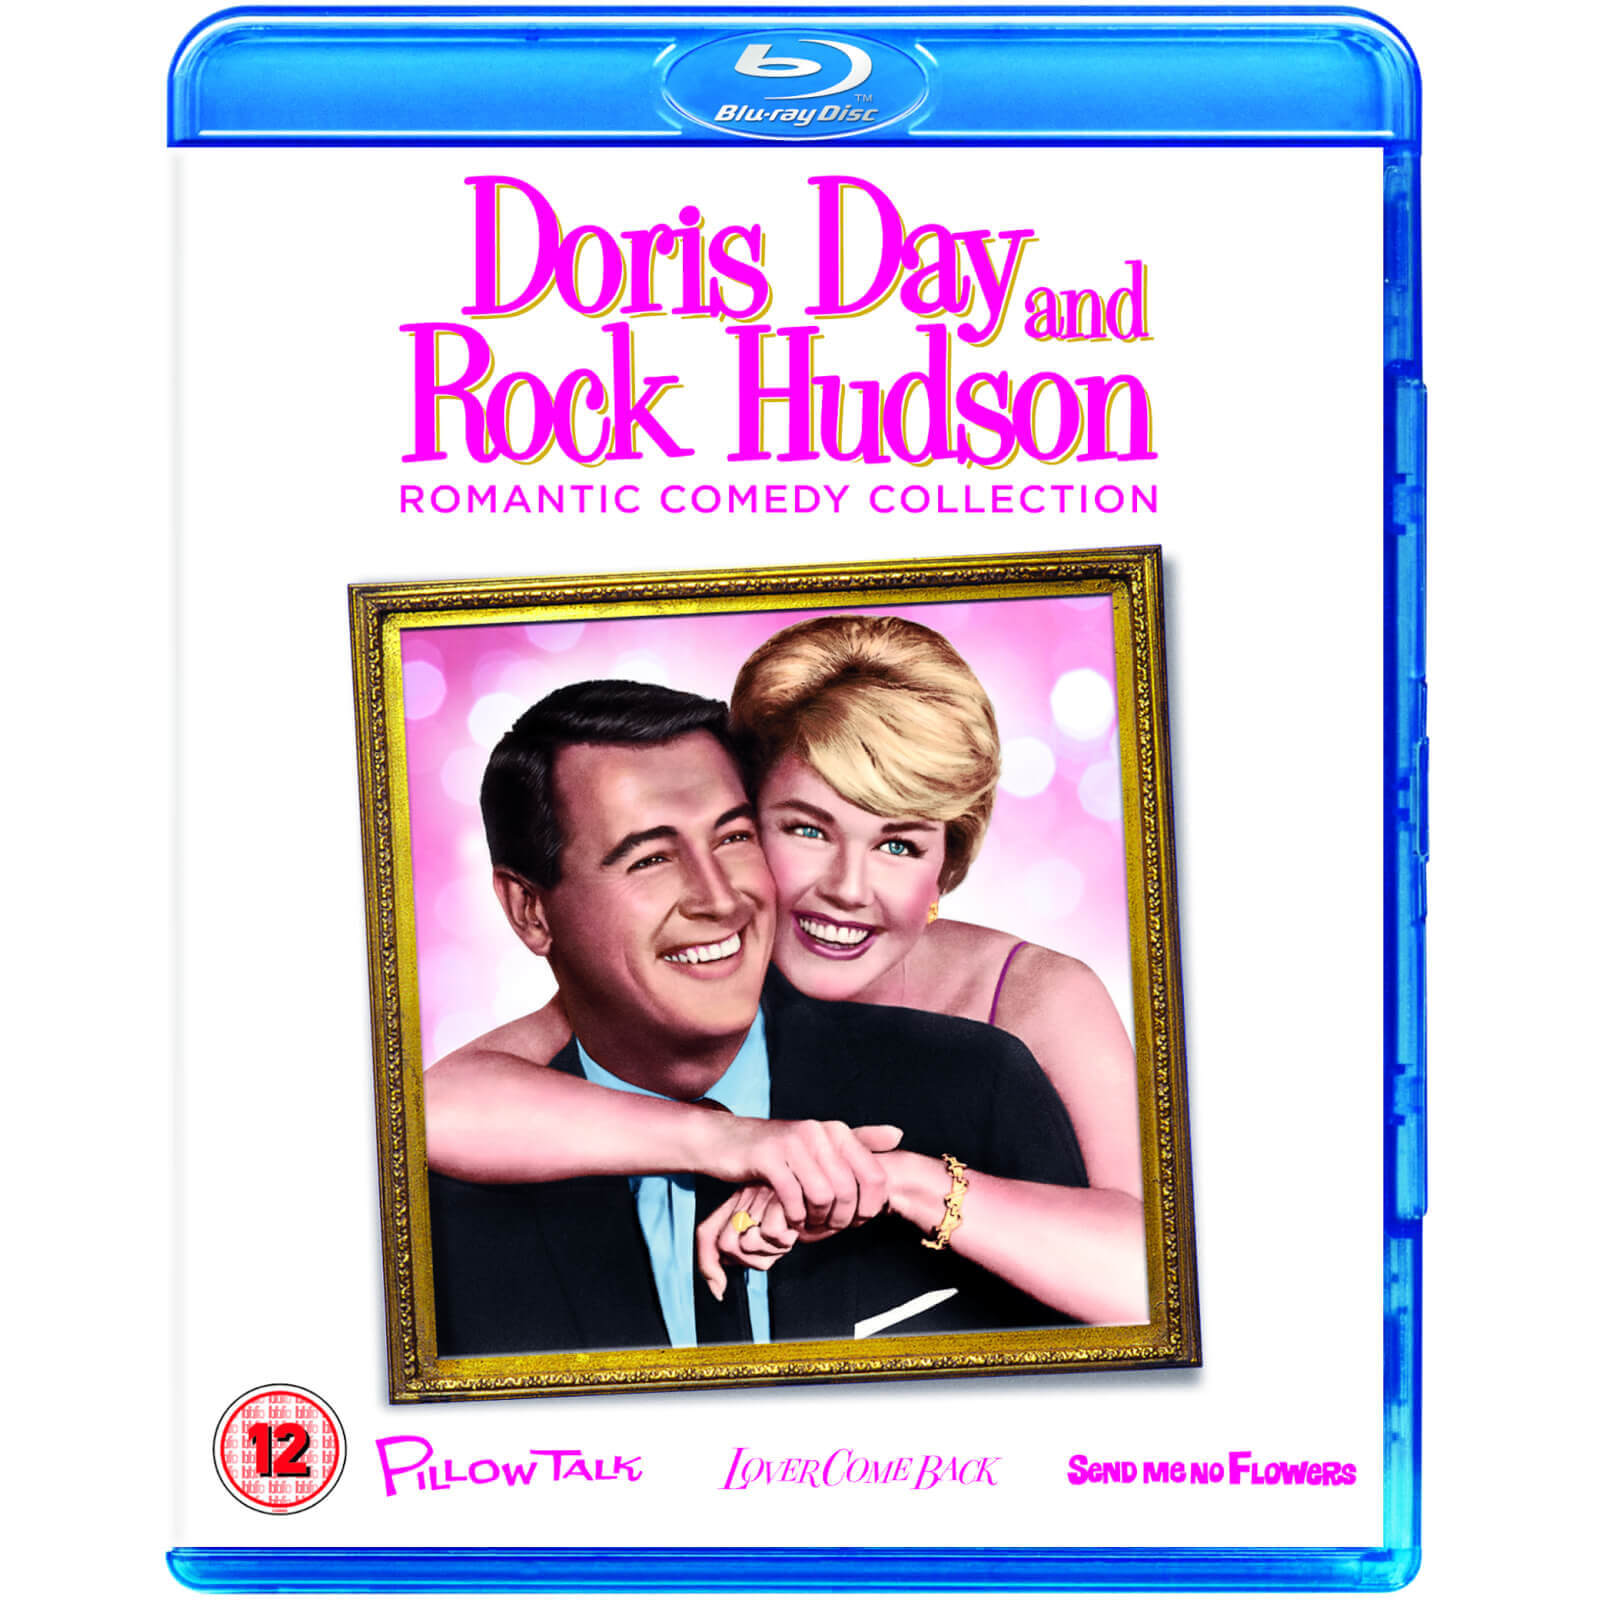 Doris Day Box-Set von Universal Pictures